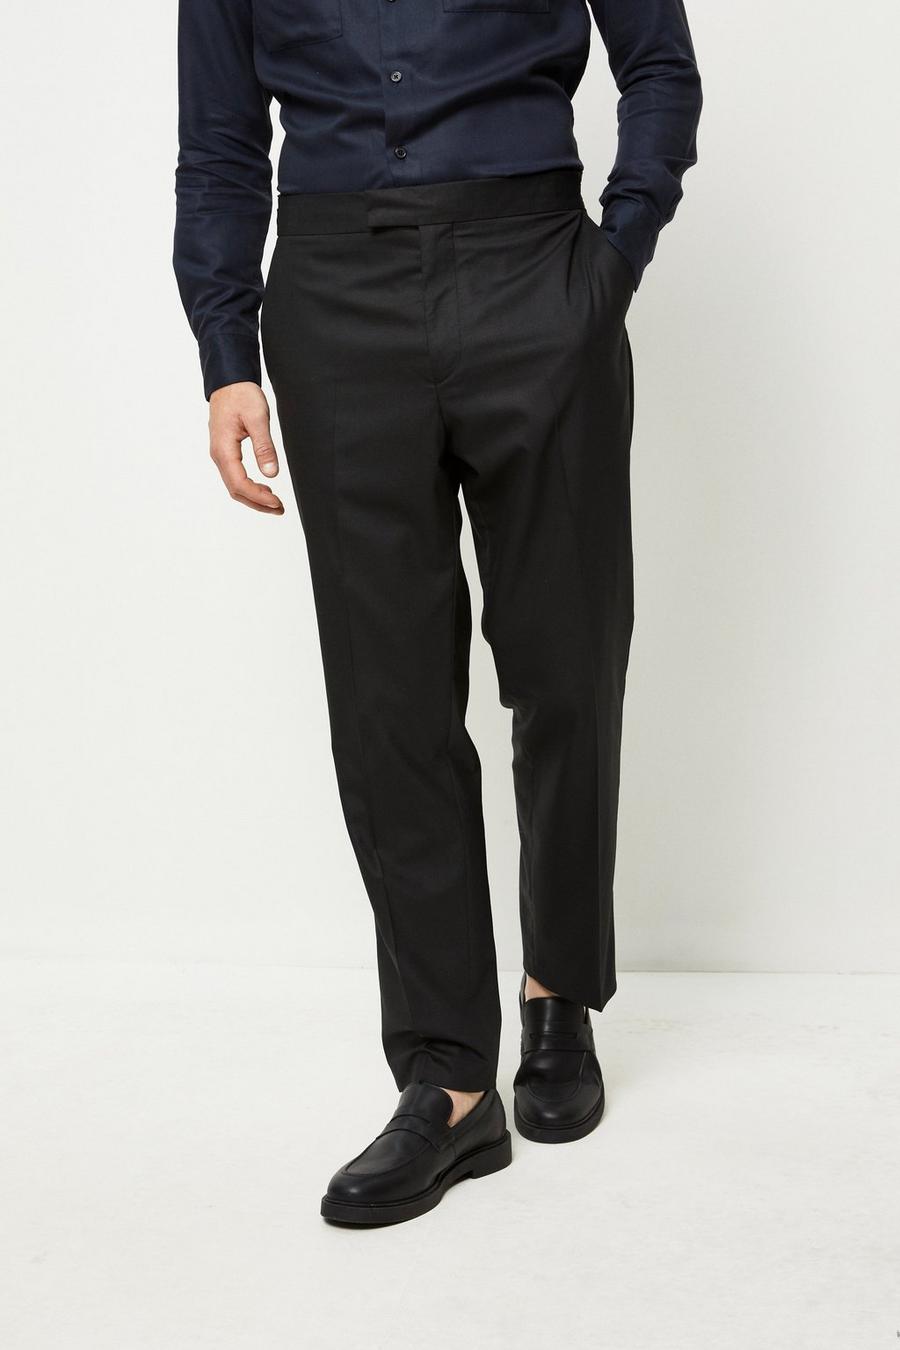 194 Tailored Fit Black Suit Trouser